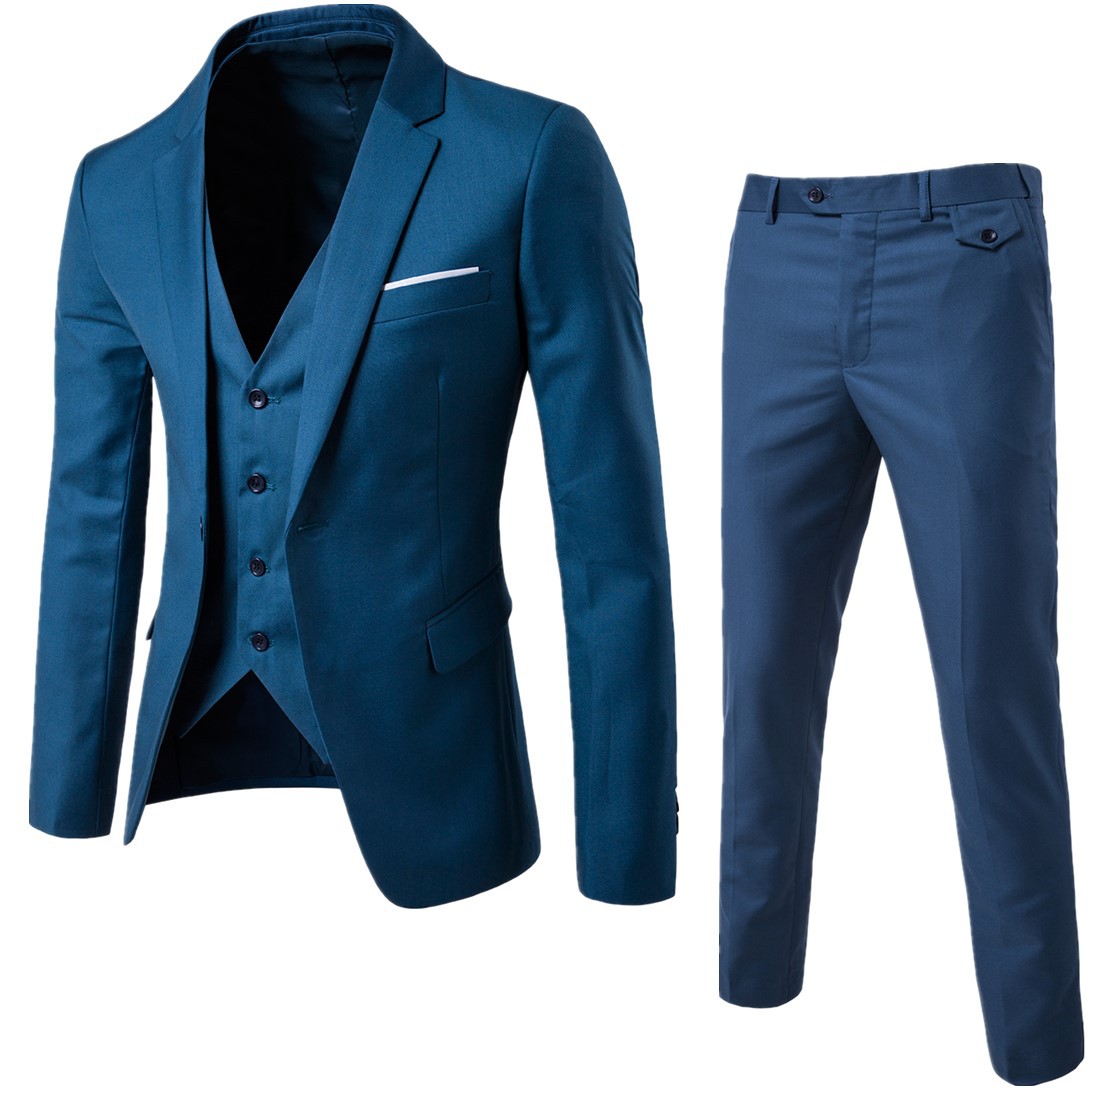 2019 new Korean version slim men's three piece suit suit with plaid pattern men's casual suit groom best man's dress